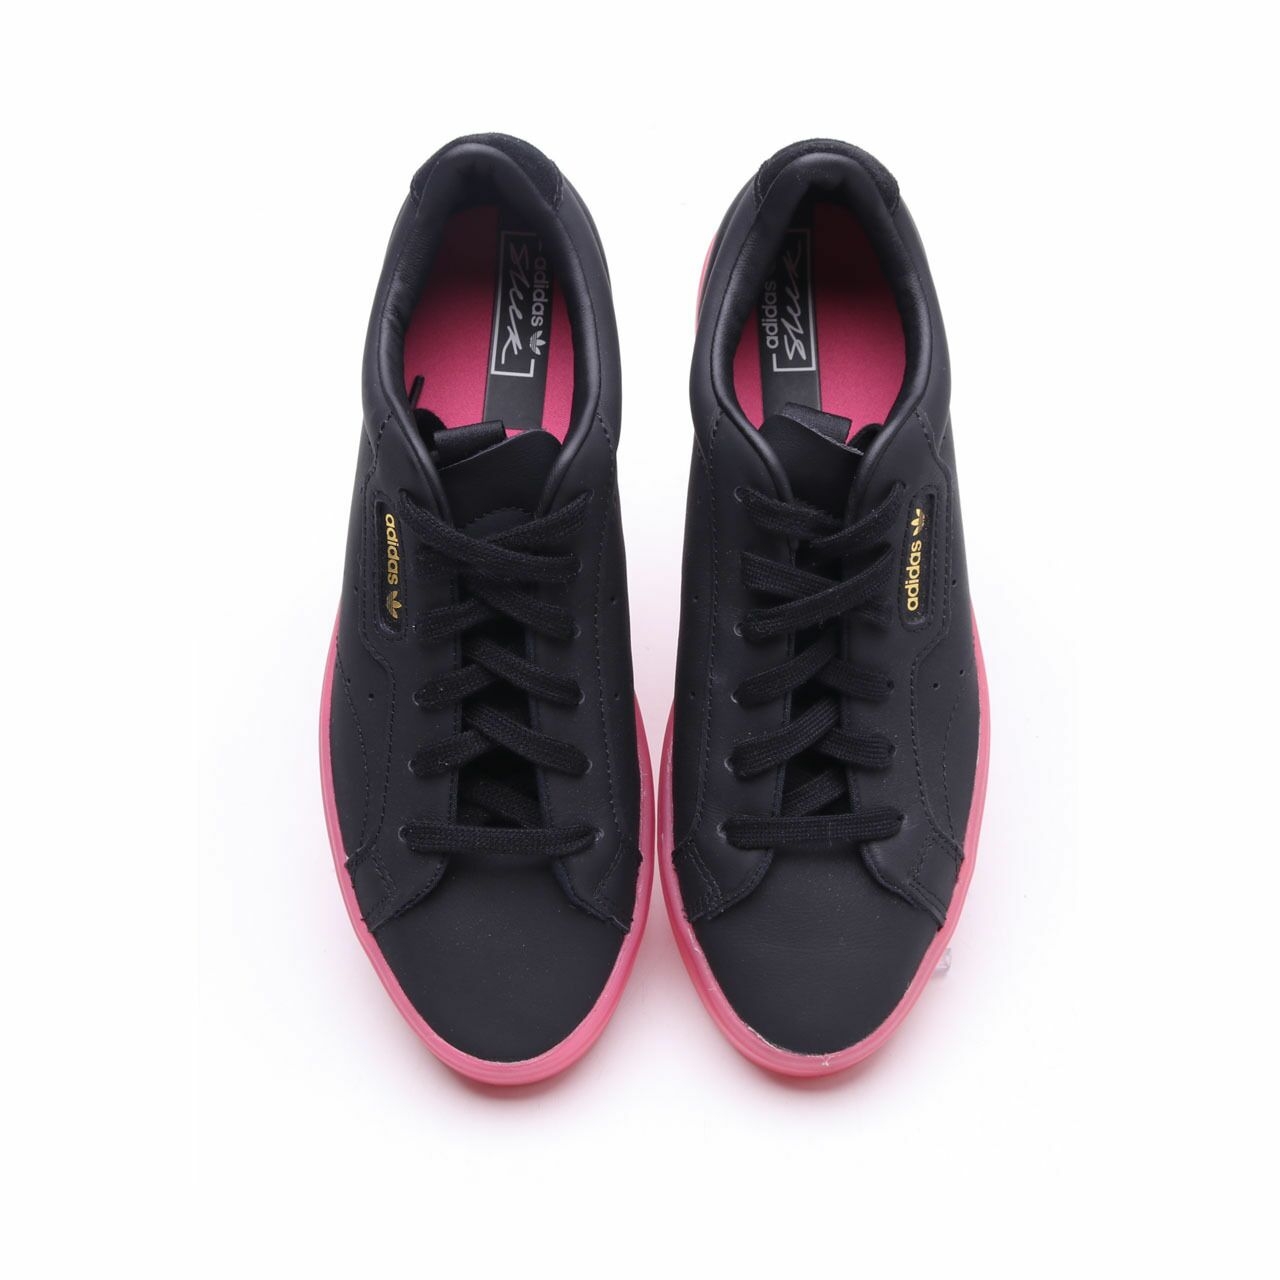 Adidas Sleek Black Sneakers